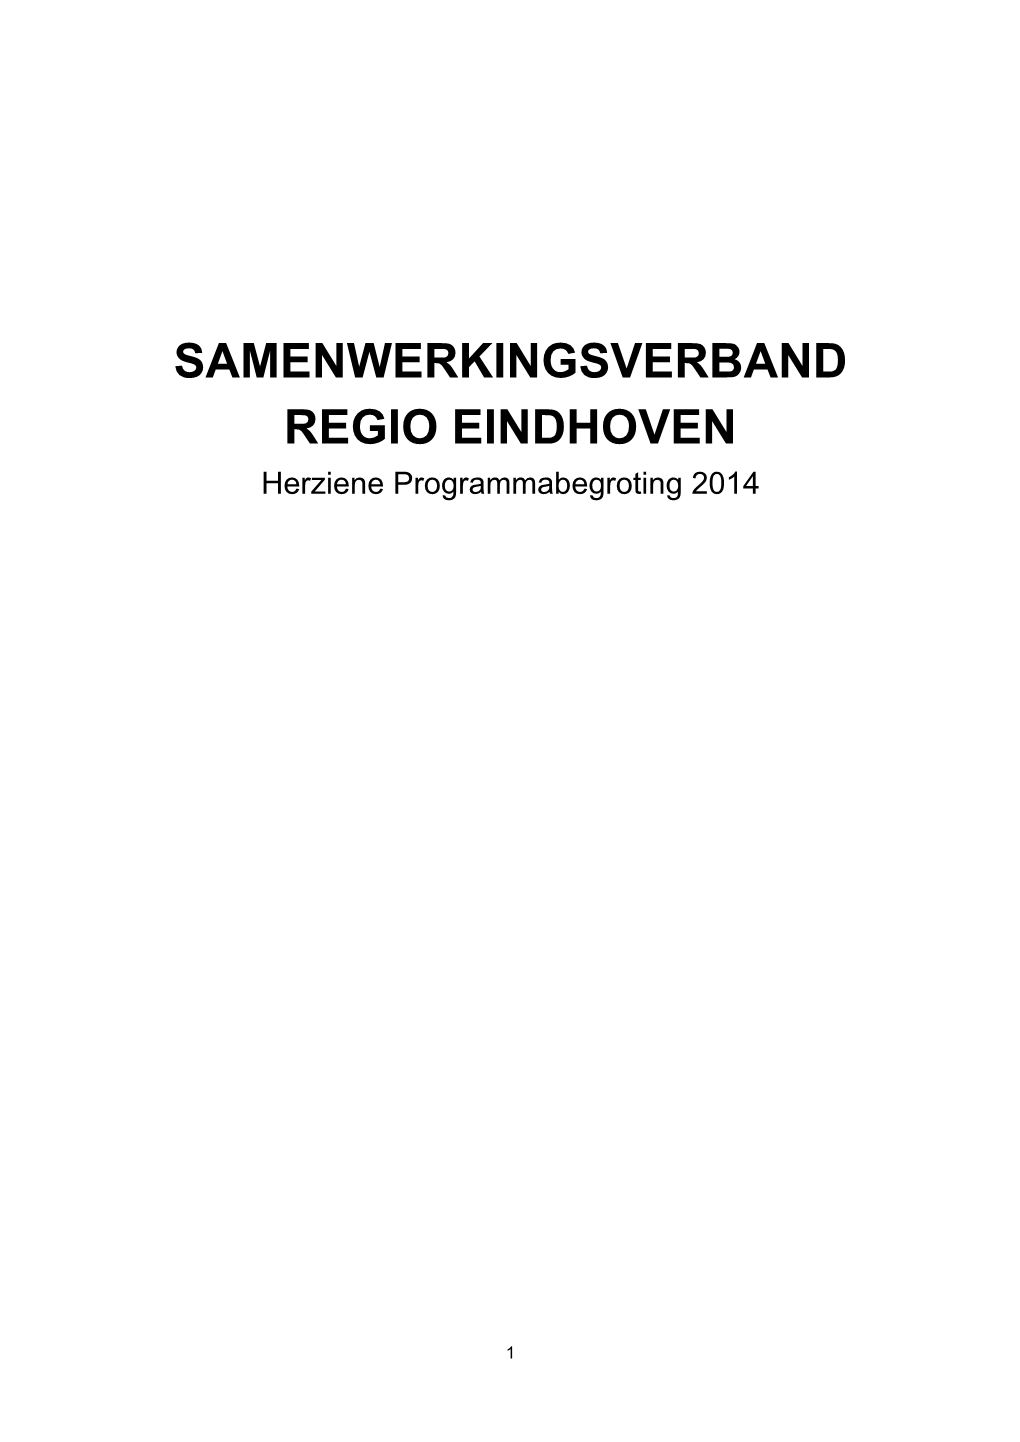 SAMENWERKINGSVERBAND REGIO EINDHOVEN Herziene Programmabegroting 2014